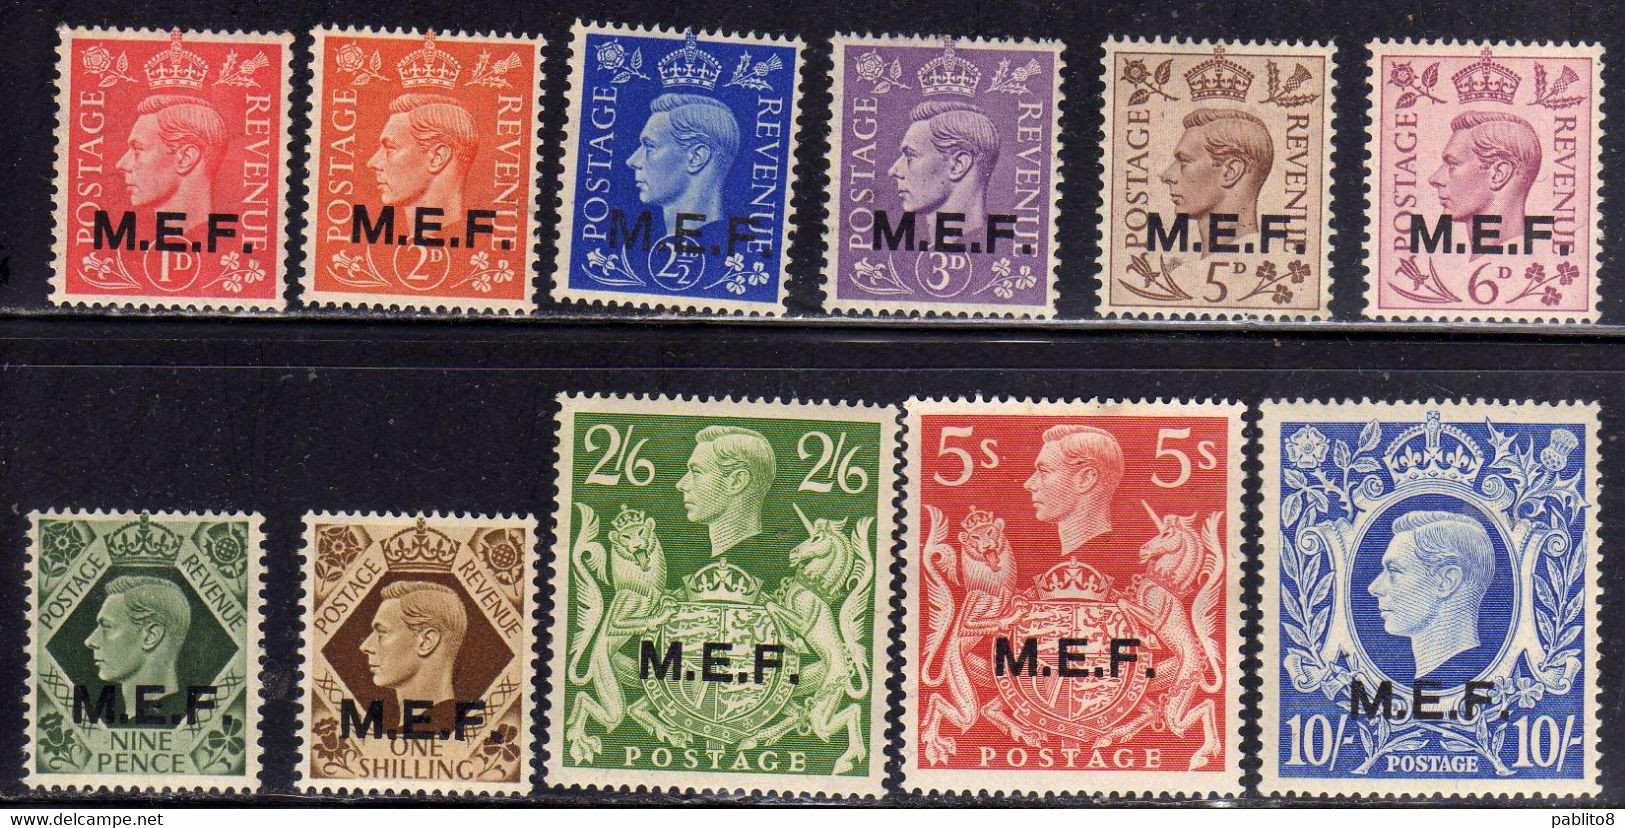 MEF 1943 - 1947 M.E.F. SERIE COMPLETA COMPLETE SET MNH - Occ. Britanique MEF